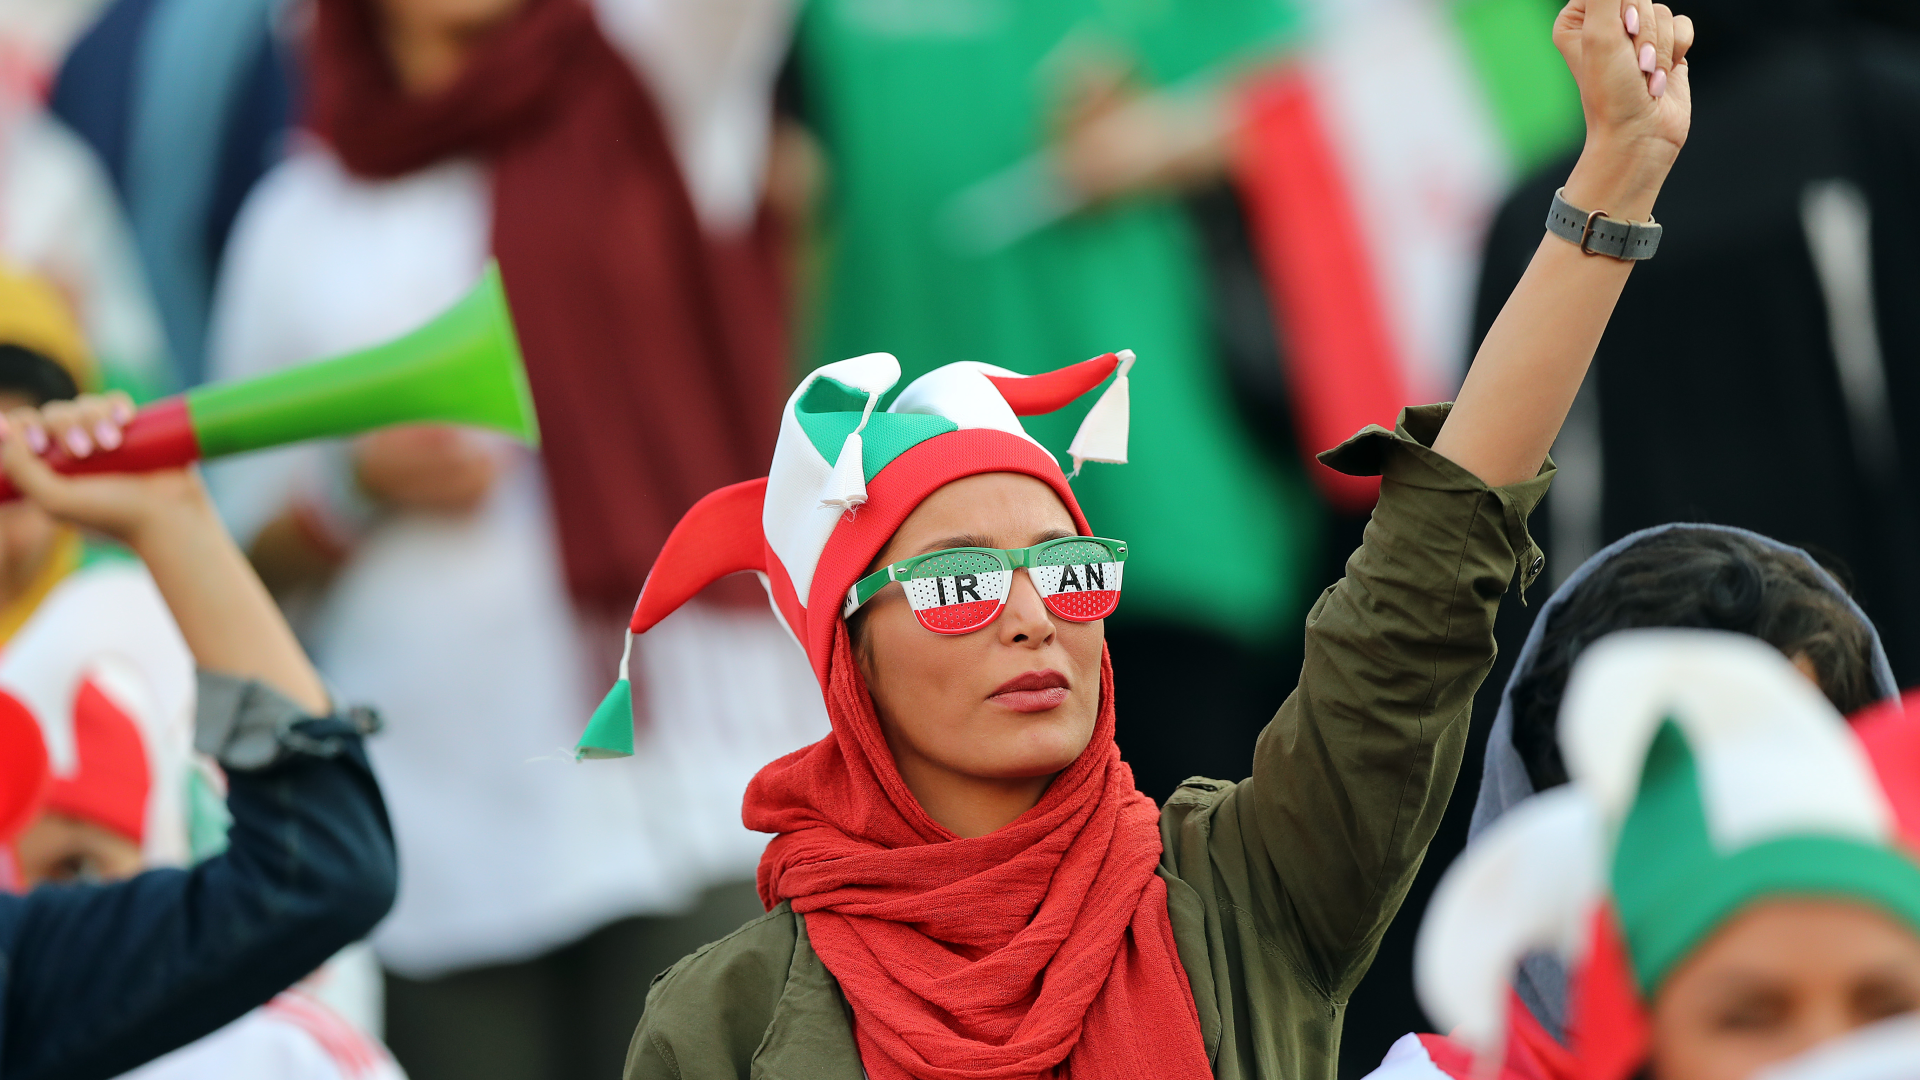 Copa do Mundo do Catar: jogo entre EUA e Irã revive crise diplomática